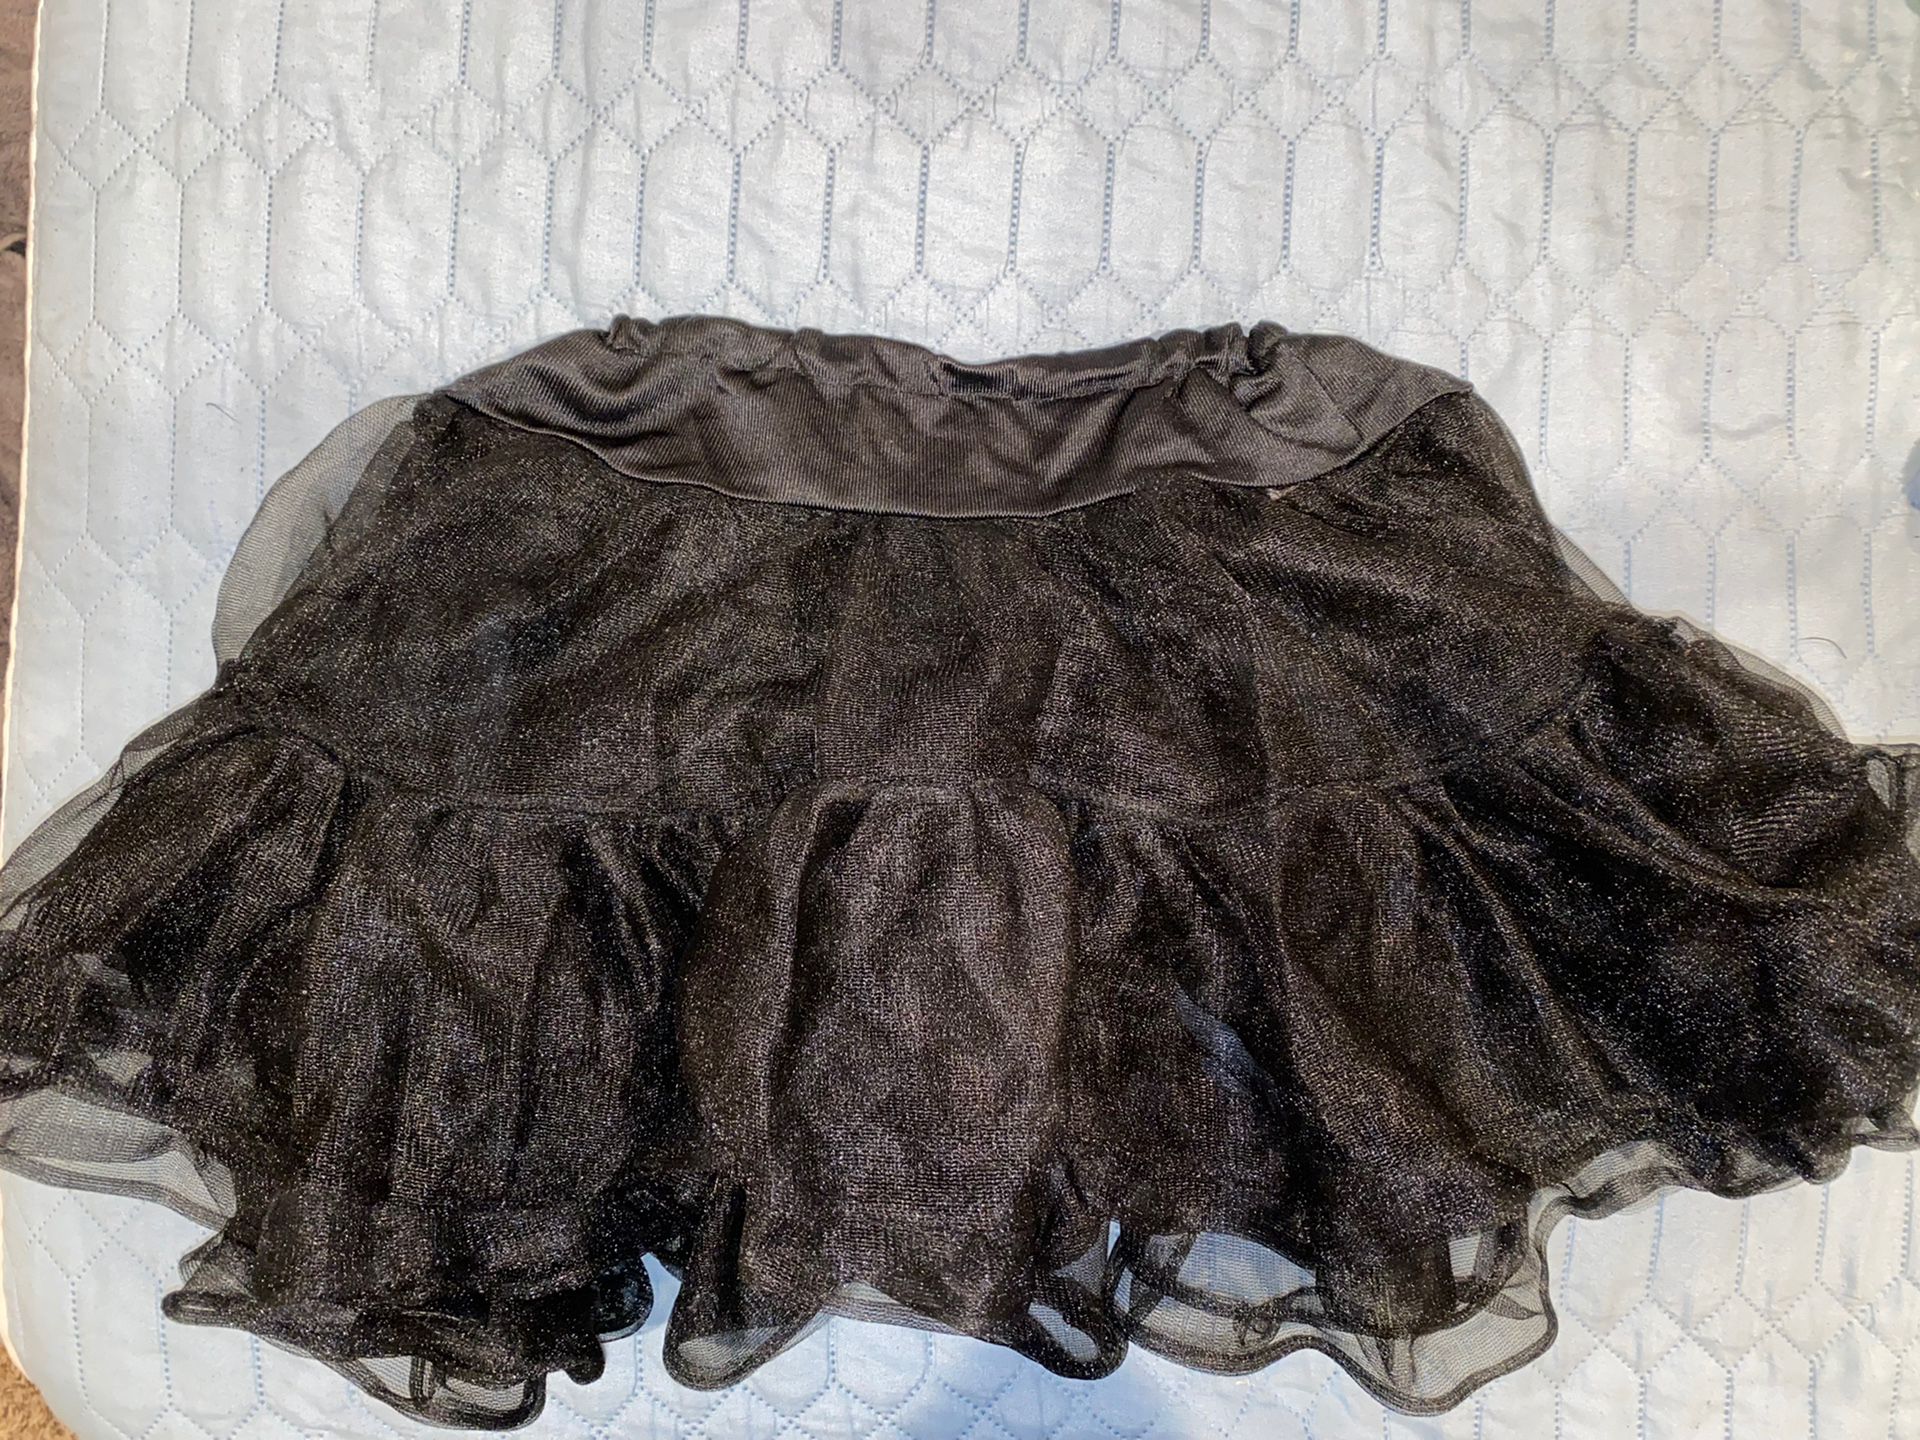 Petticoat Skirt